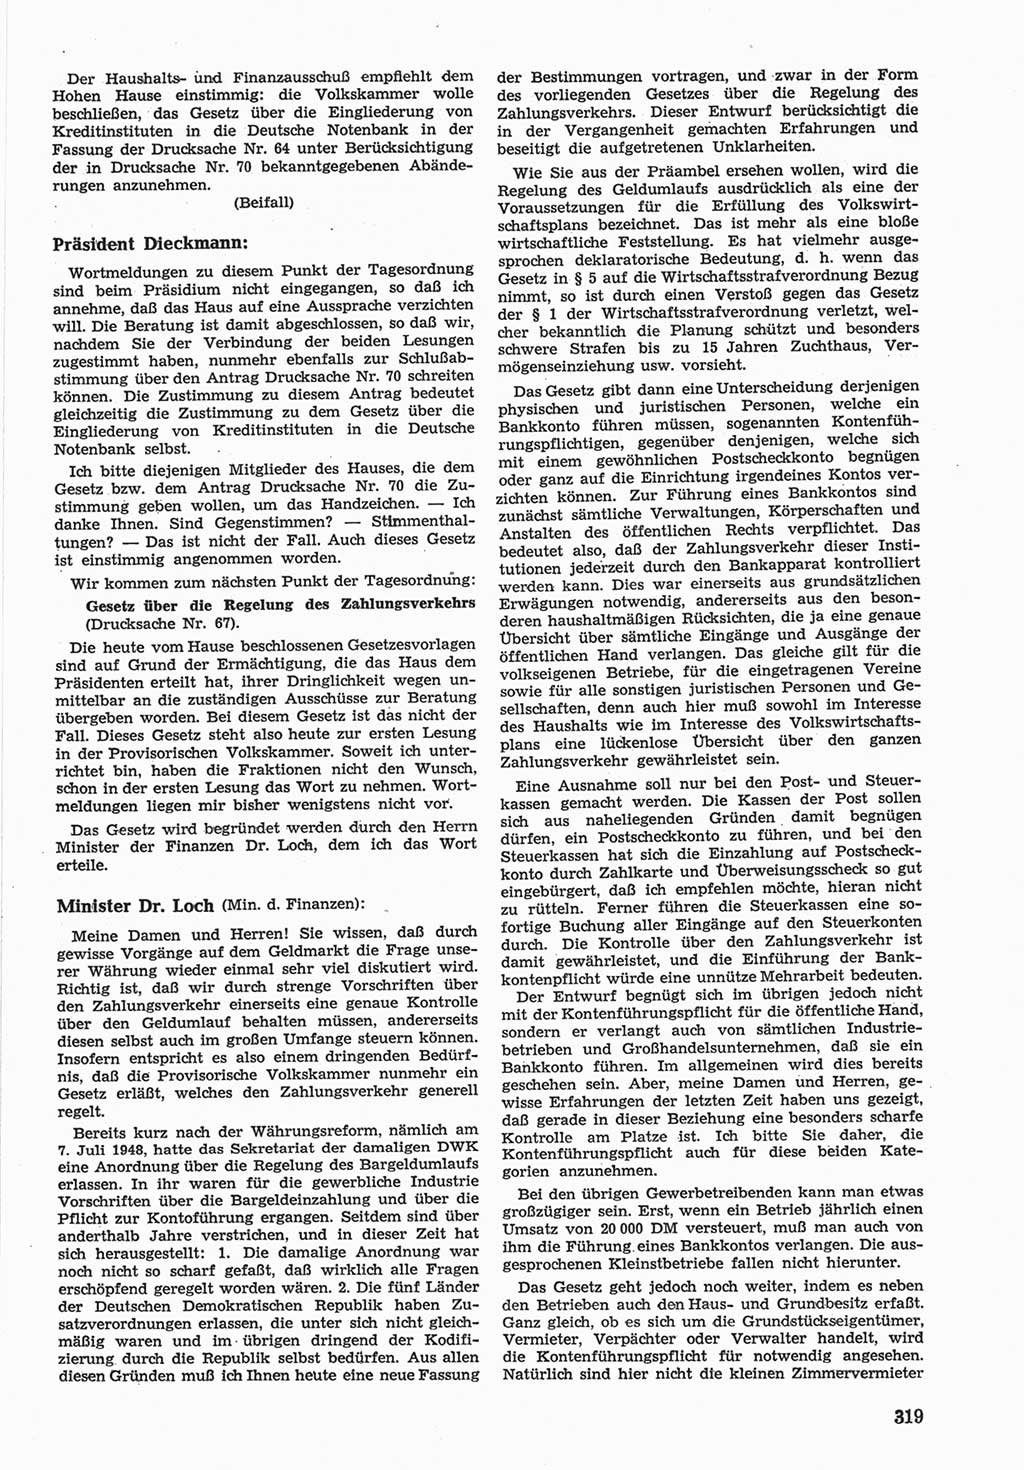 Provisorische Volkskammer (VK) der Deutschen Demokratischen Republik (DDR) 1949-1950, Dokument 333 (Prov. VK DDR 1949-1950, Dok. 333)